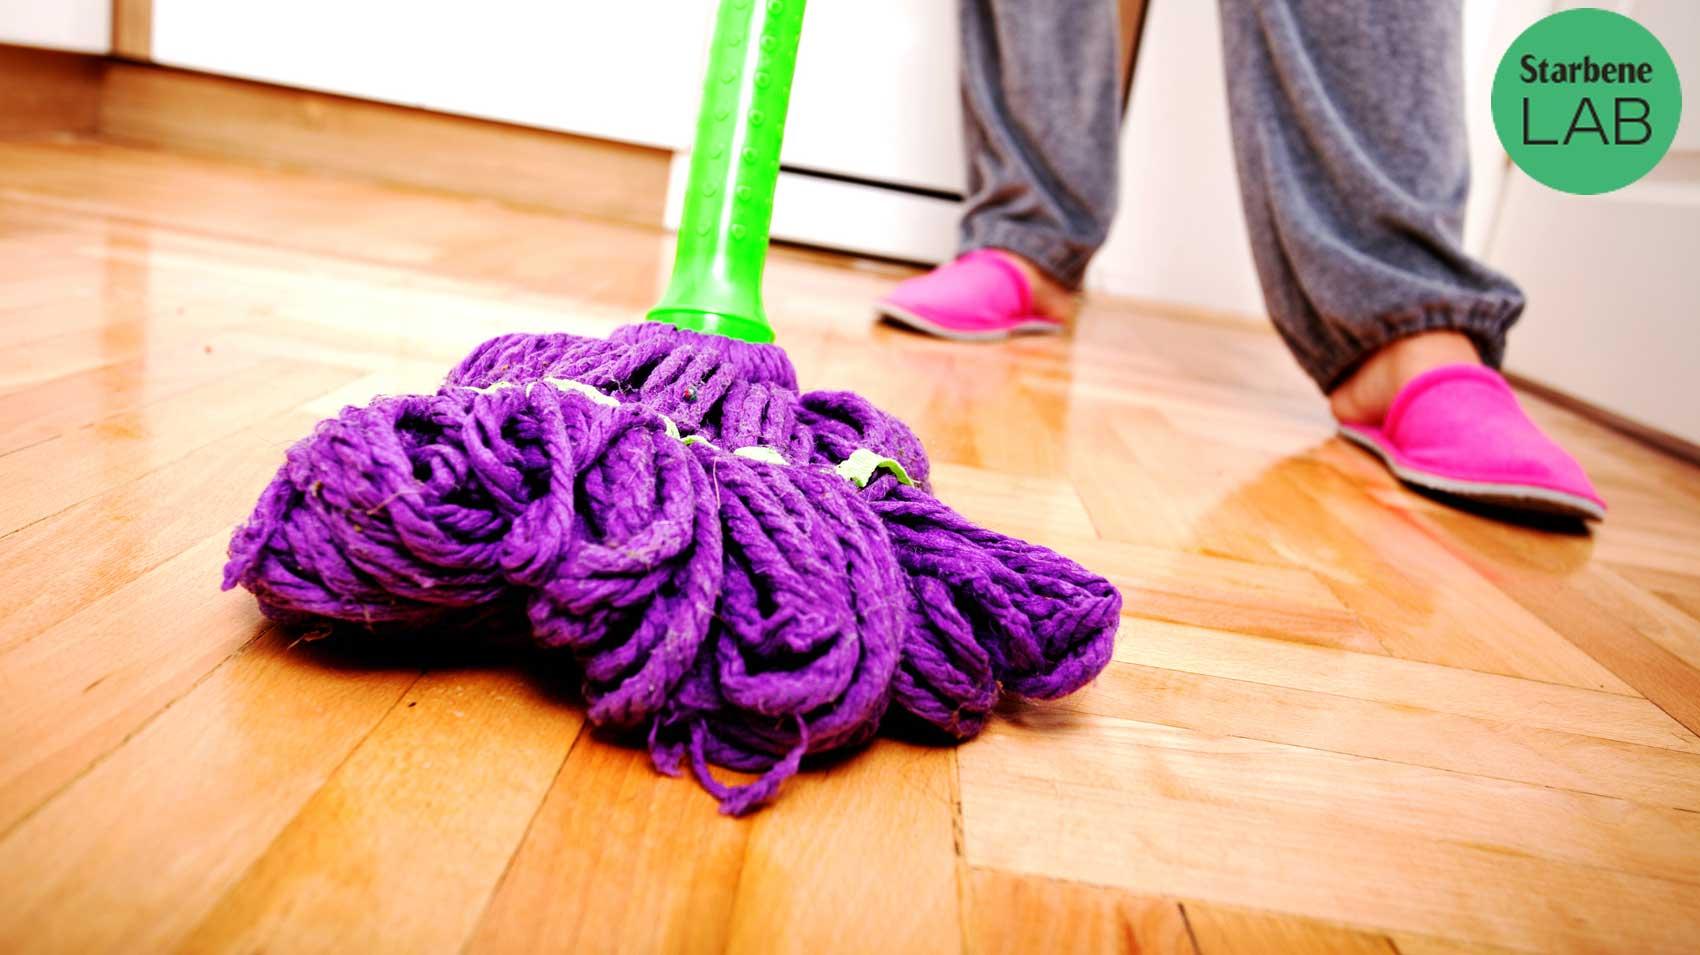 Detergenti per pavimenti delicati: i 4 migliori - Starbene